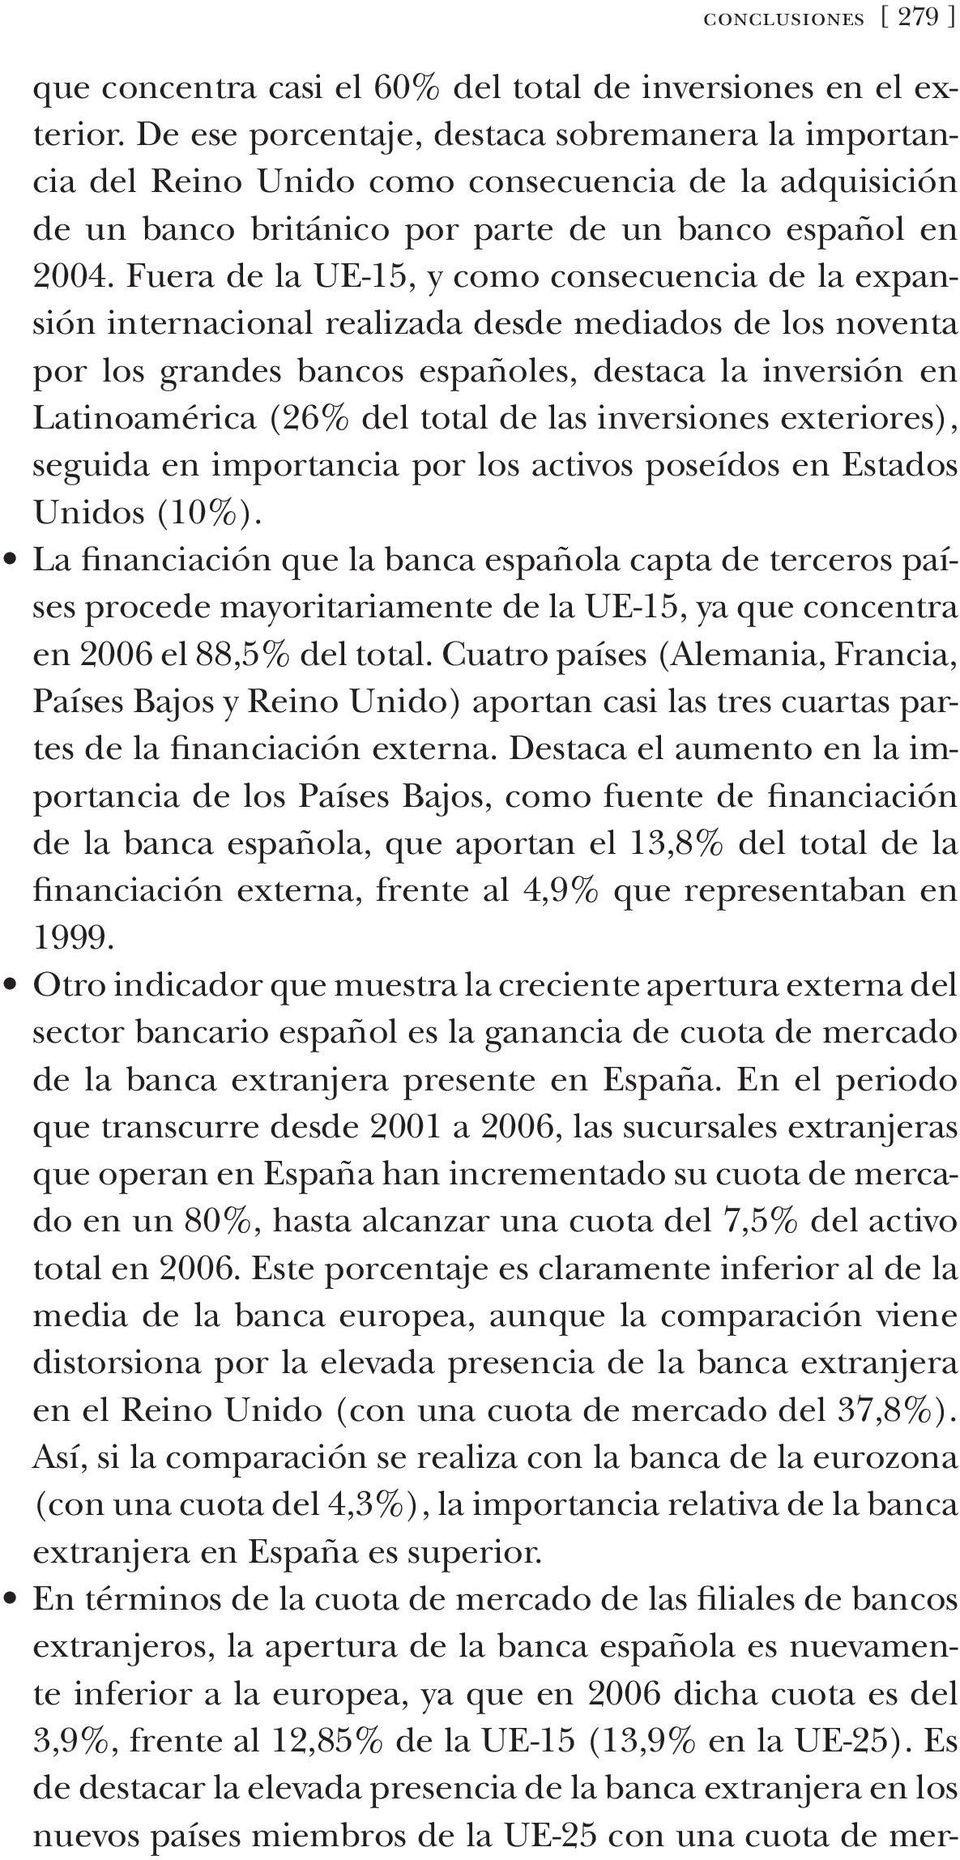 Fuera de la ue-15, y como consecuencia de la expansión internacional realizada desde mediados de los noventa por los grandes bancos españoles, destaca la inversión en Latinoamérica (26% del total de